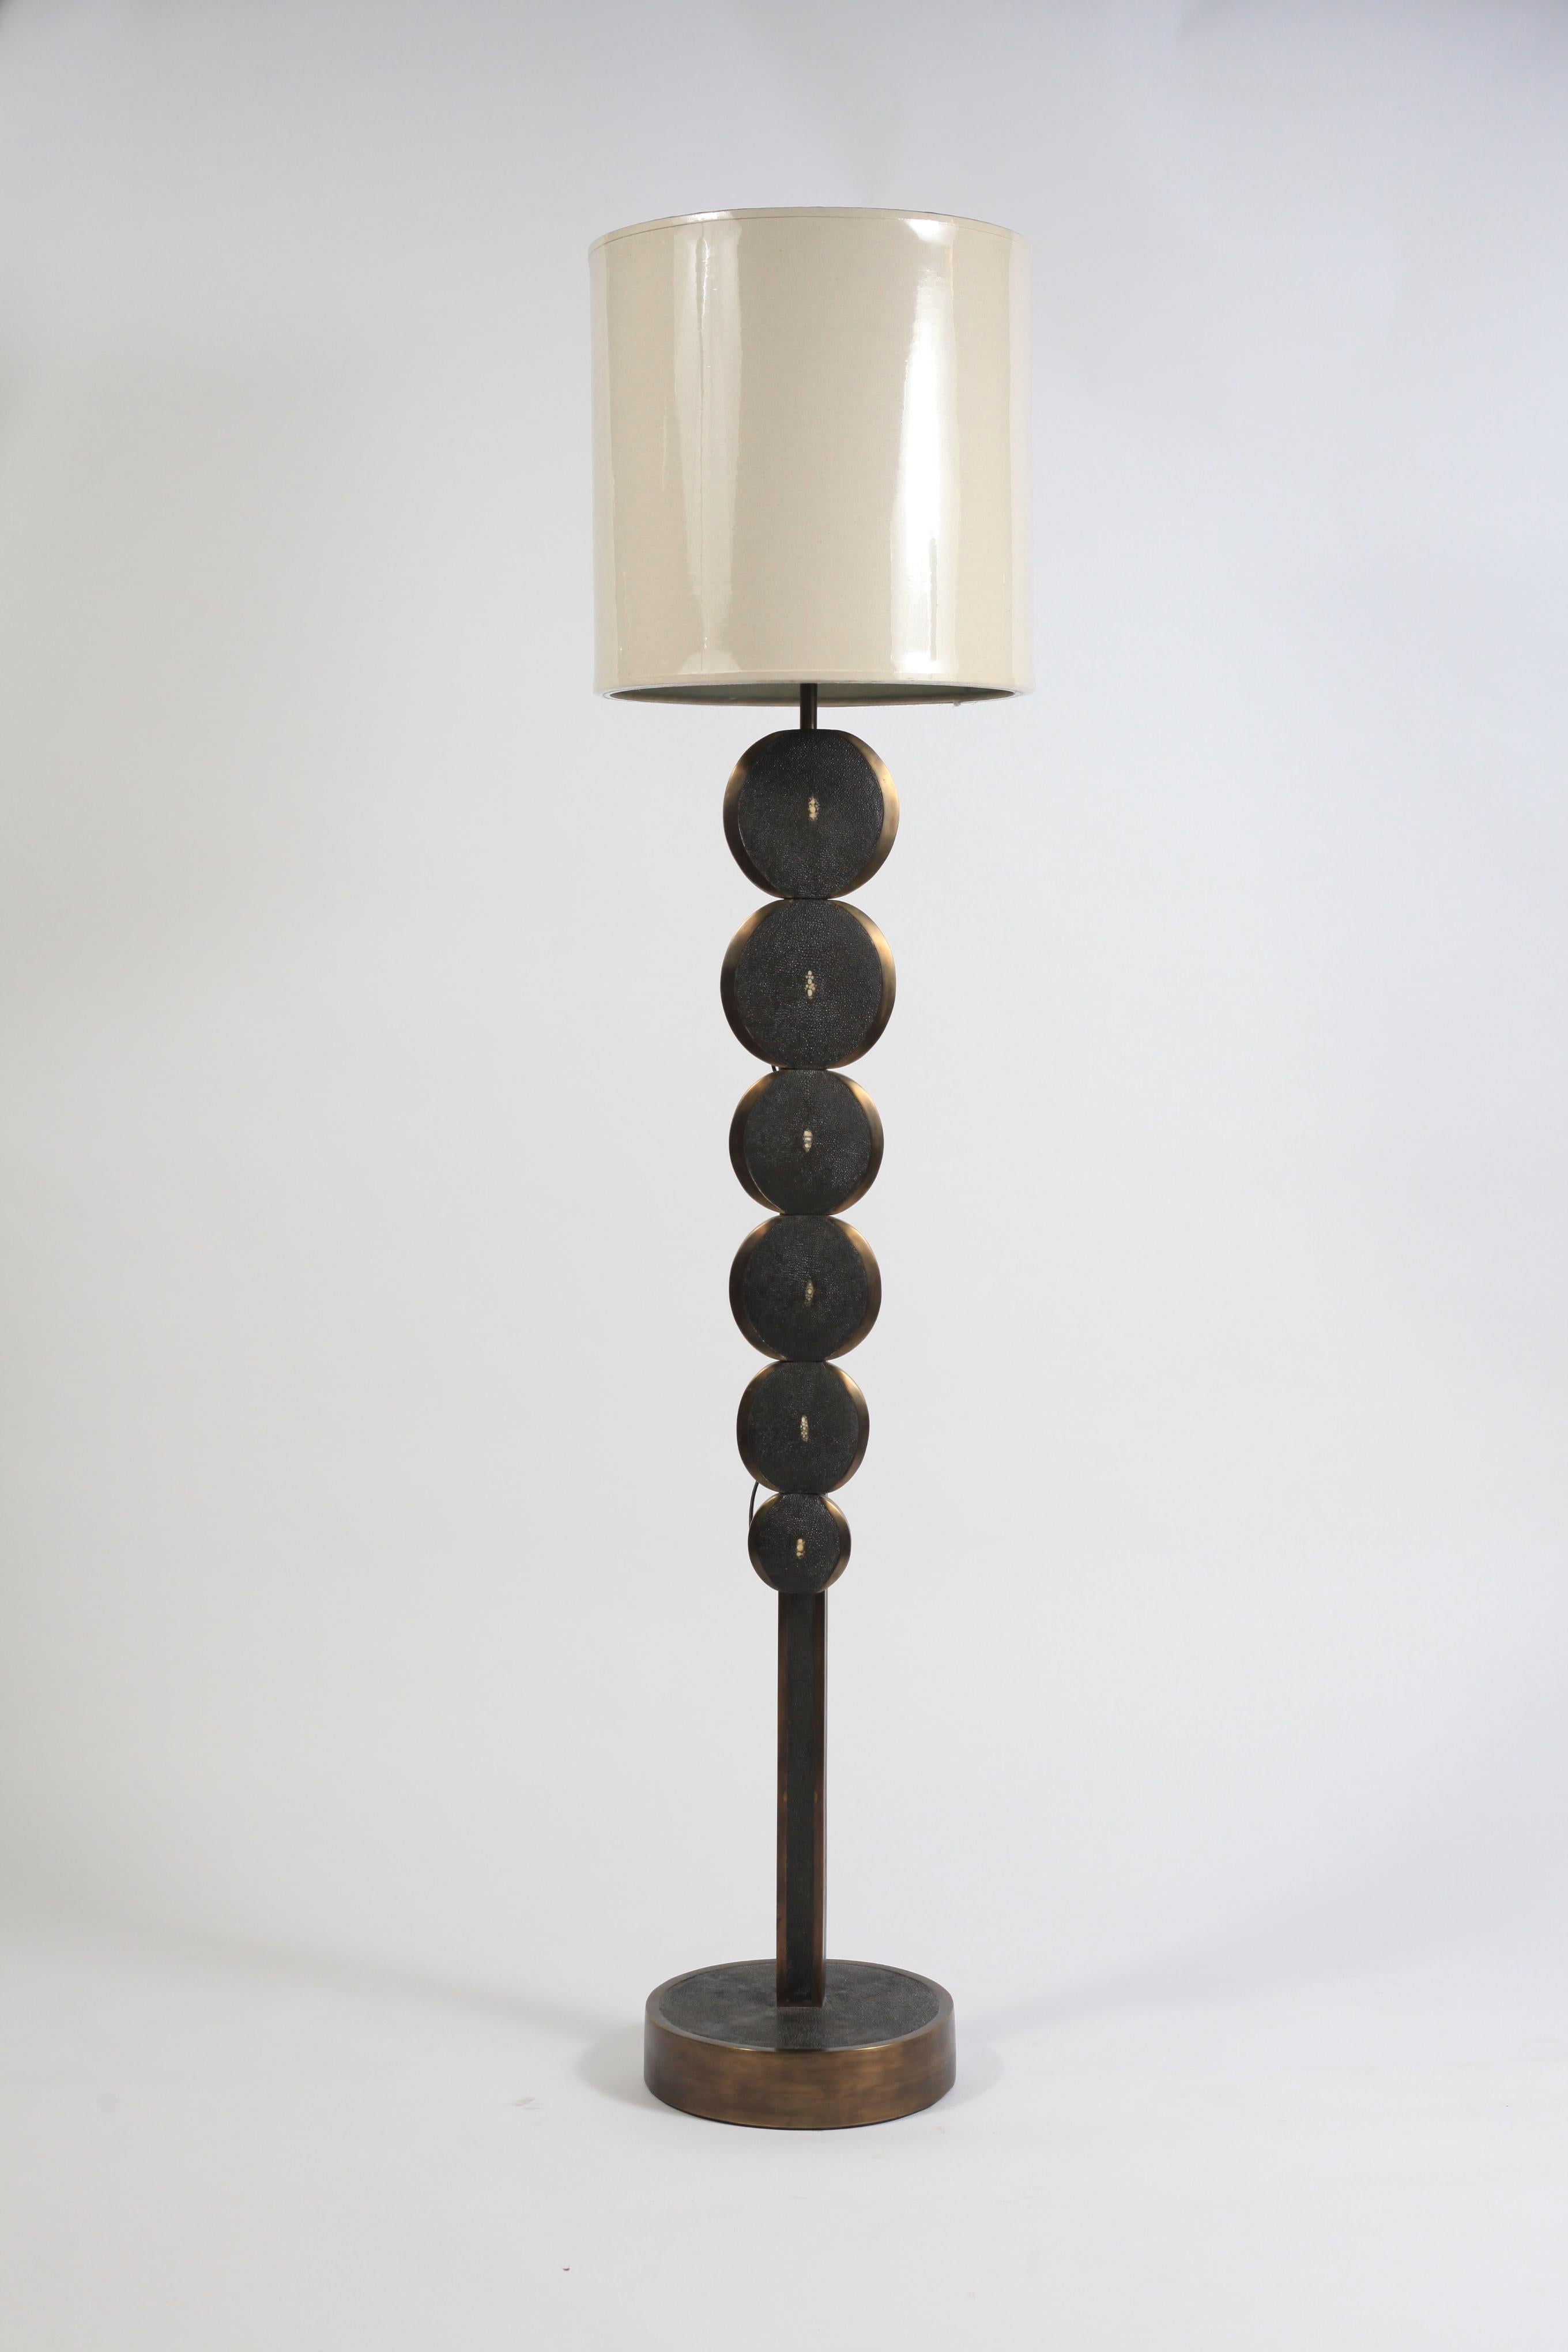 Ce lampadaire réglable en galuchat crème et laiton patiné bronze de R & Y Augousti est une pièce sculpturale avec de beaux détails d'incrustation. Ce lampadaire présente des parties circulaires qui augmentent progressivement et sont incrustées dans